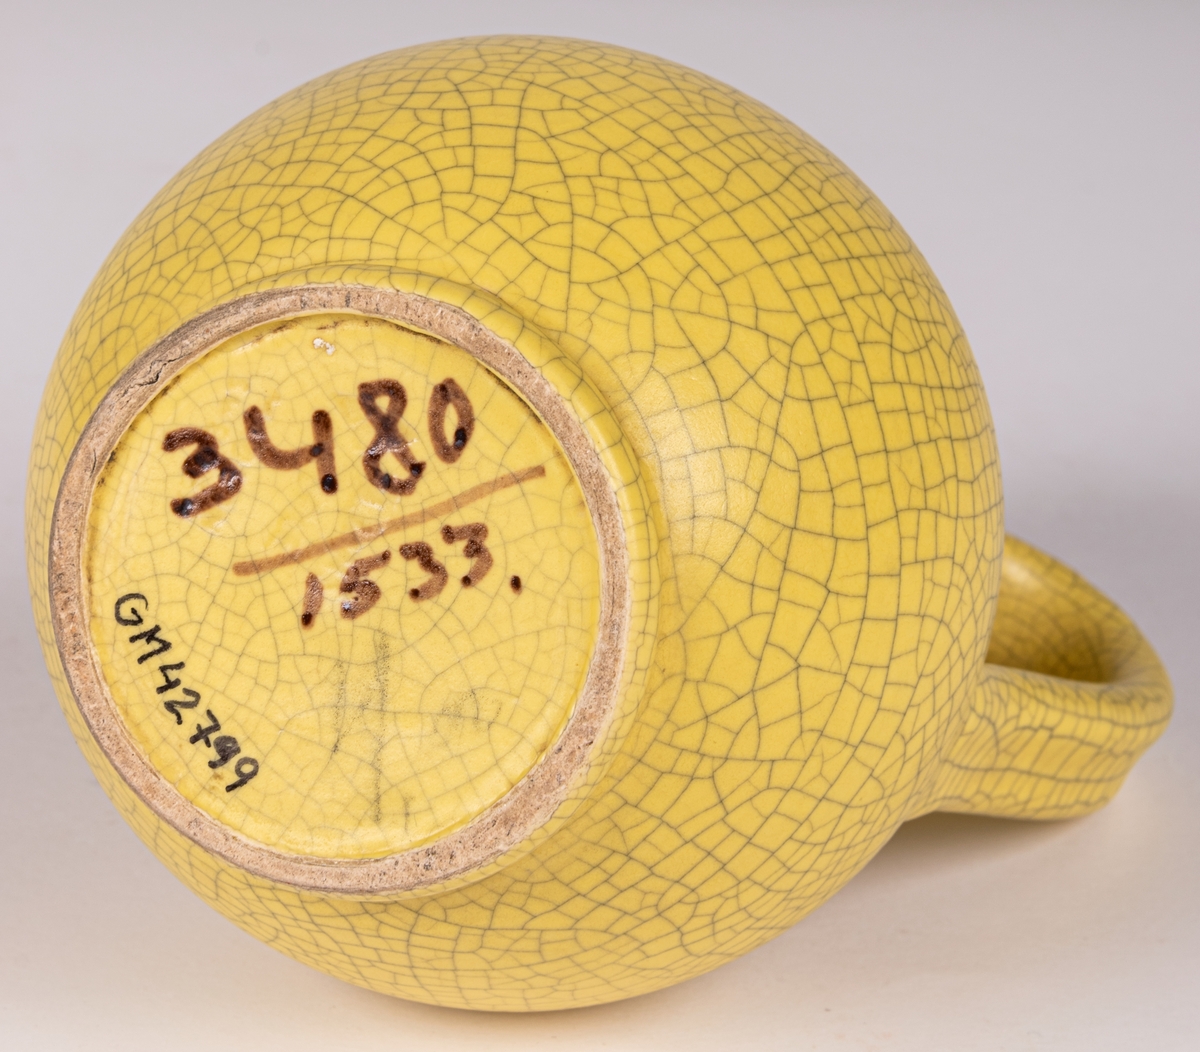 Liten gul kanna med hänkel, modell 3480, glasyr 1533 - klargul matt antik konstglasyr (krackelerad). Formgiven av konstnär Eva Jancke-Björk 1944 för Bo Fajans, Gävle.